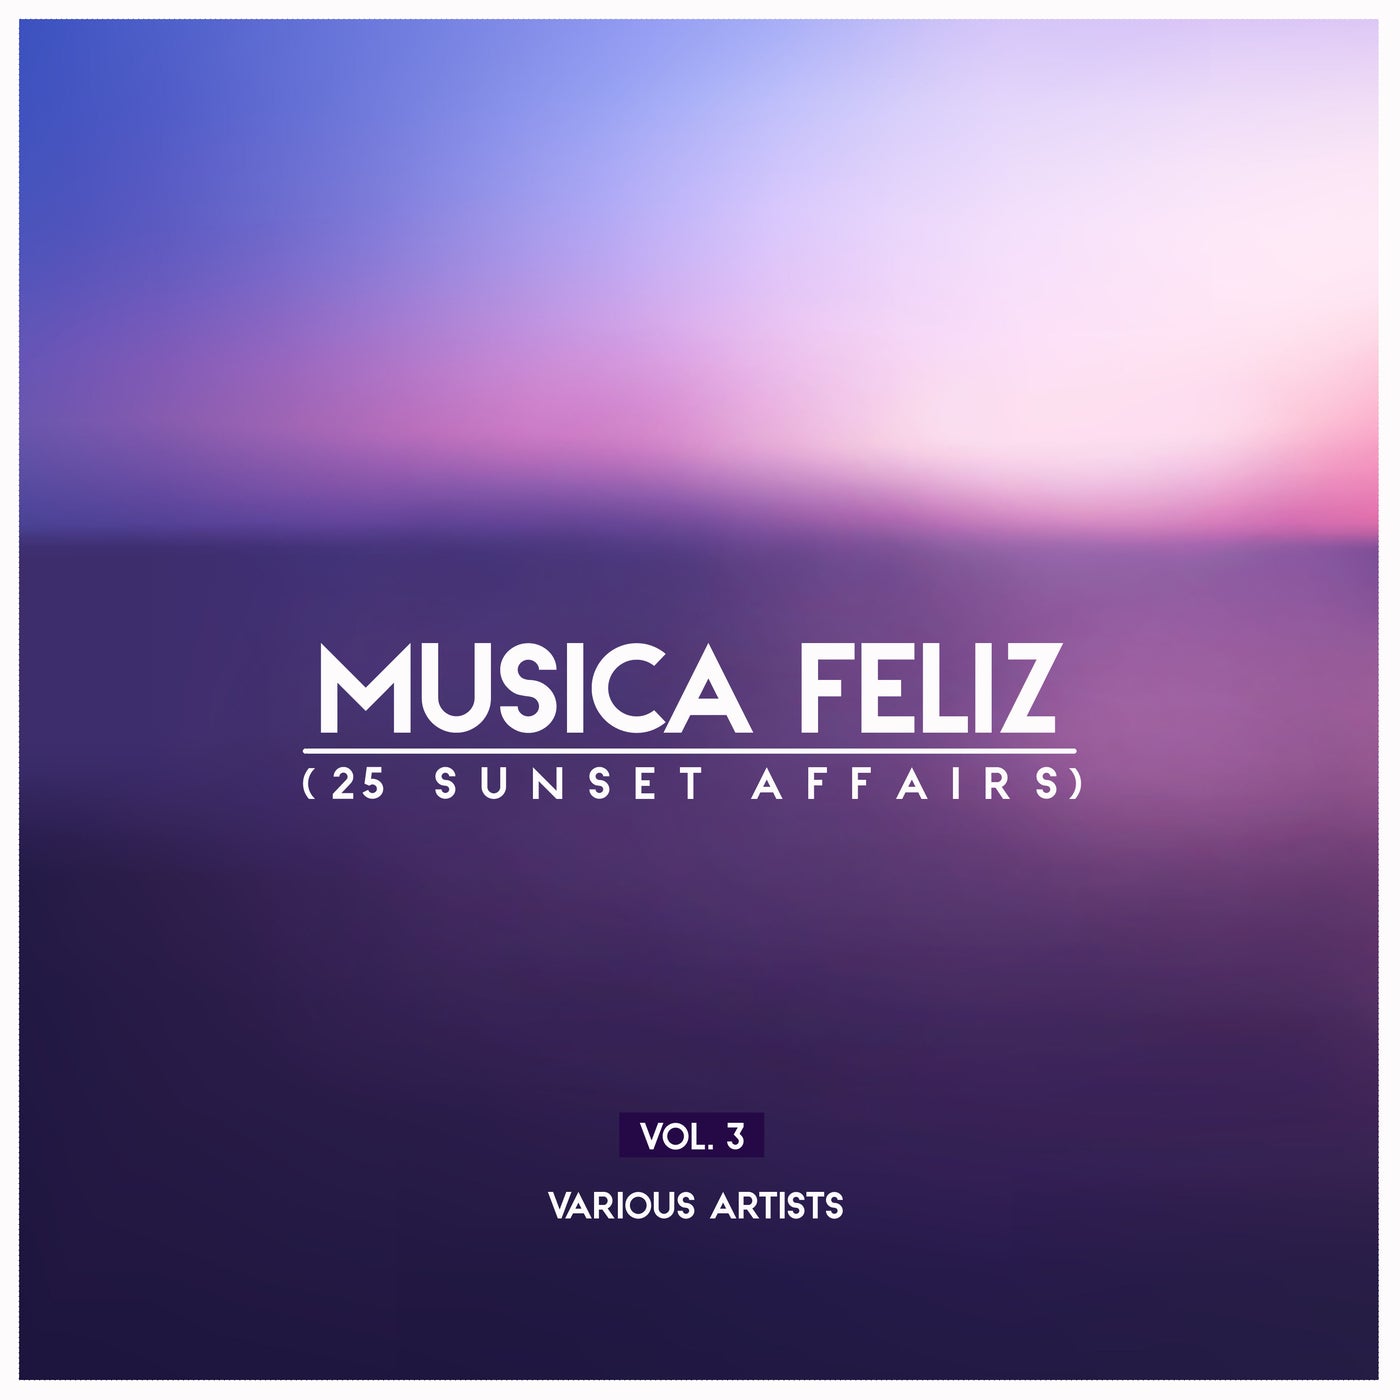 Musica Feliz, Vol. 3 (25 Sunset Affairs)